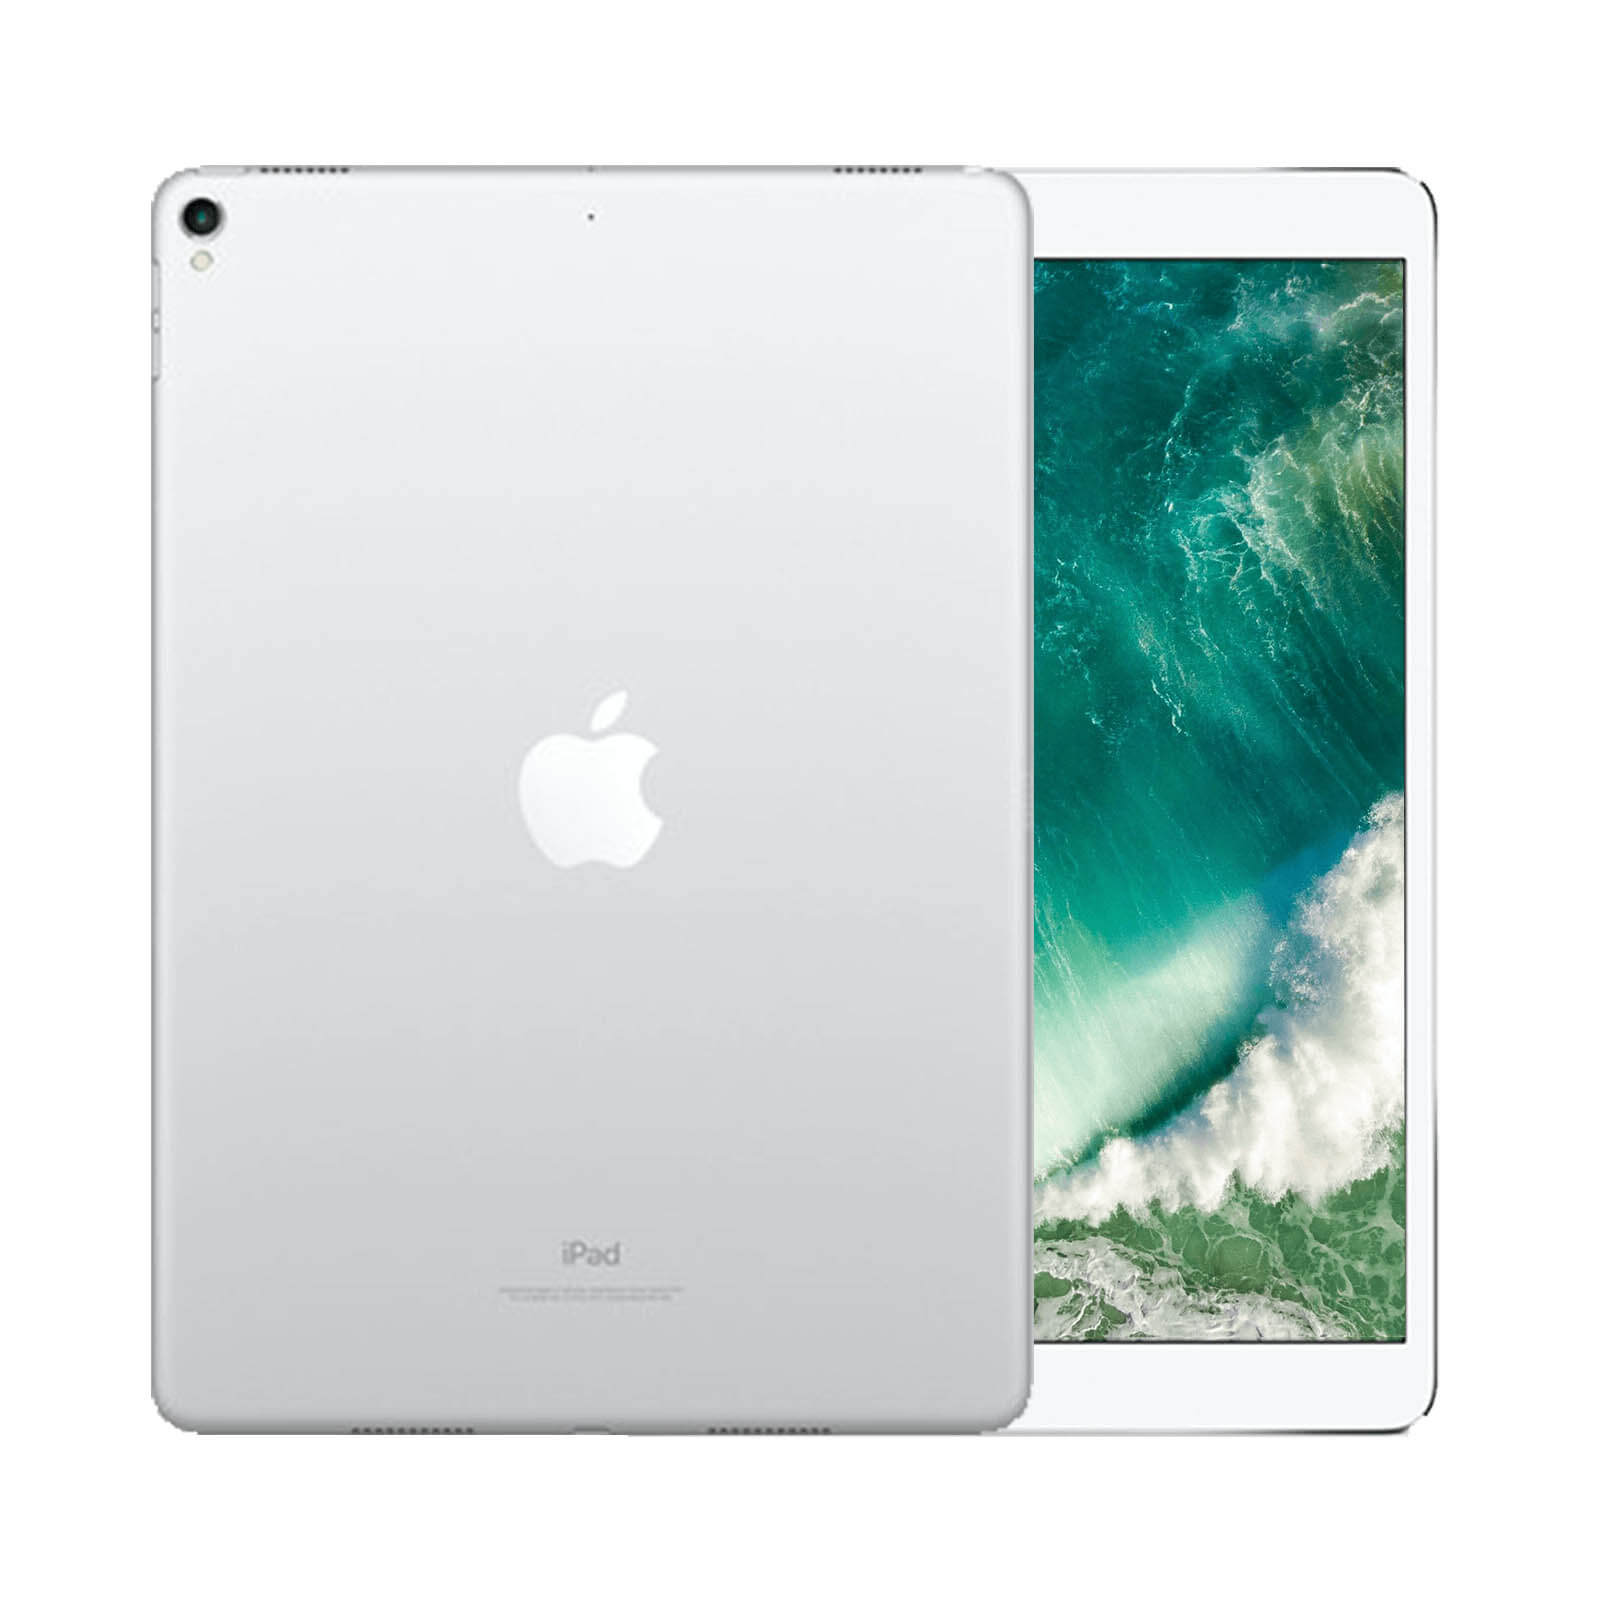 iPad Pro 11 Inch 64GB Space Grey Pristine - WiFi 64GB Space Grey Pristine